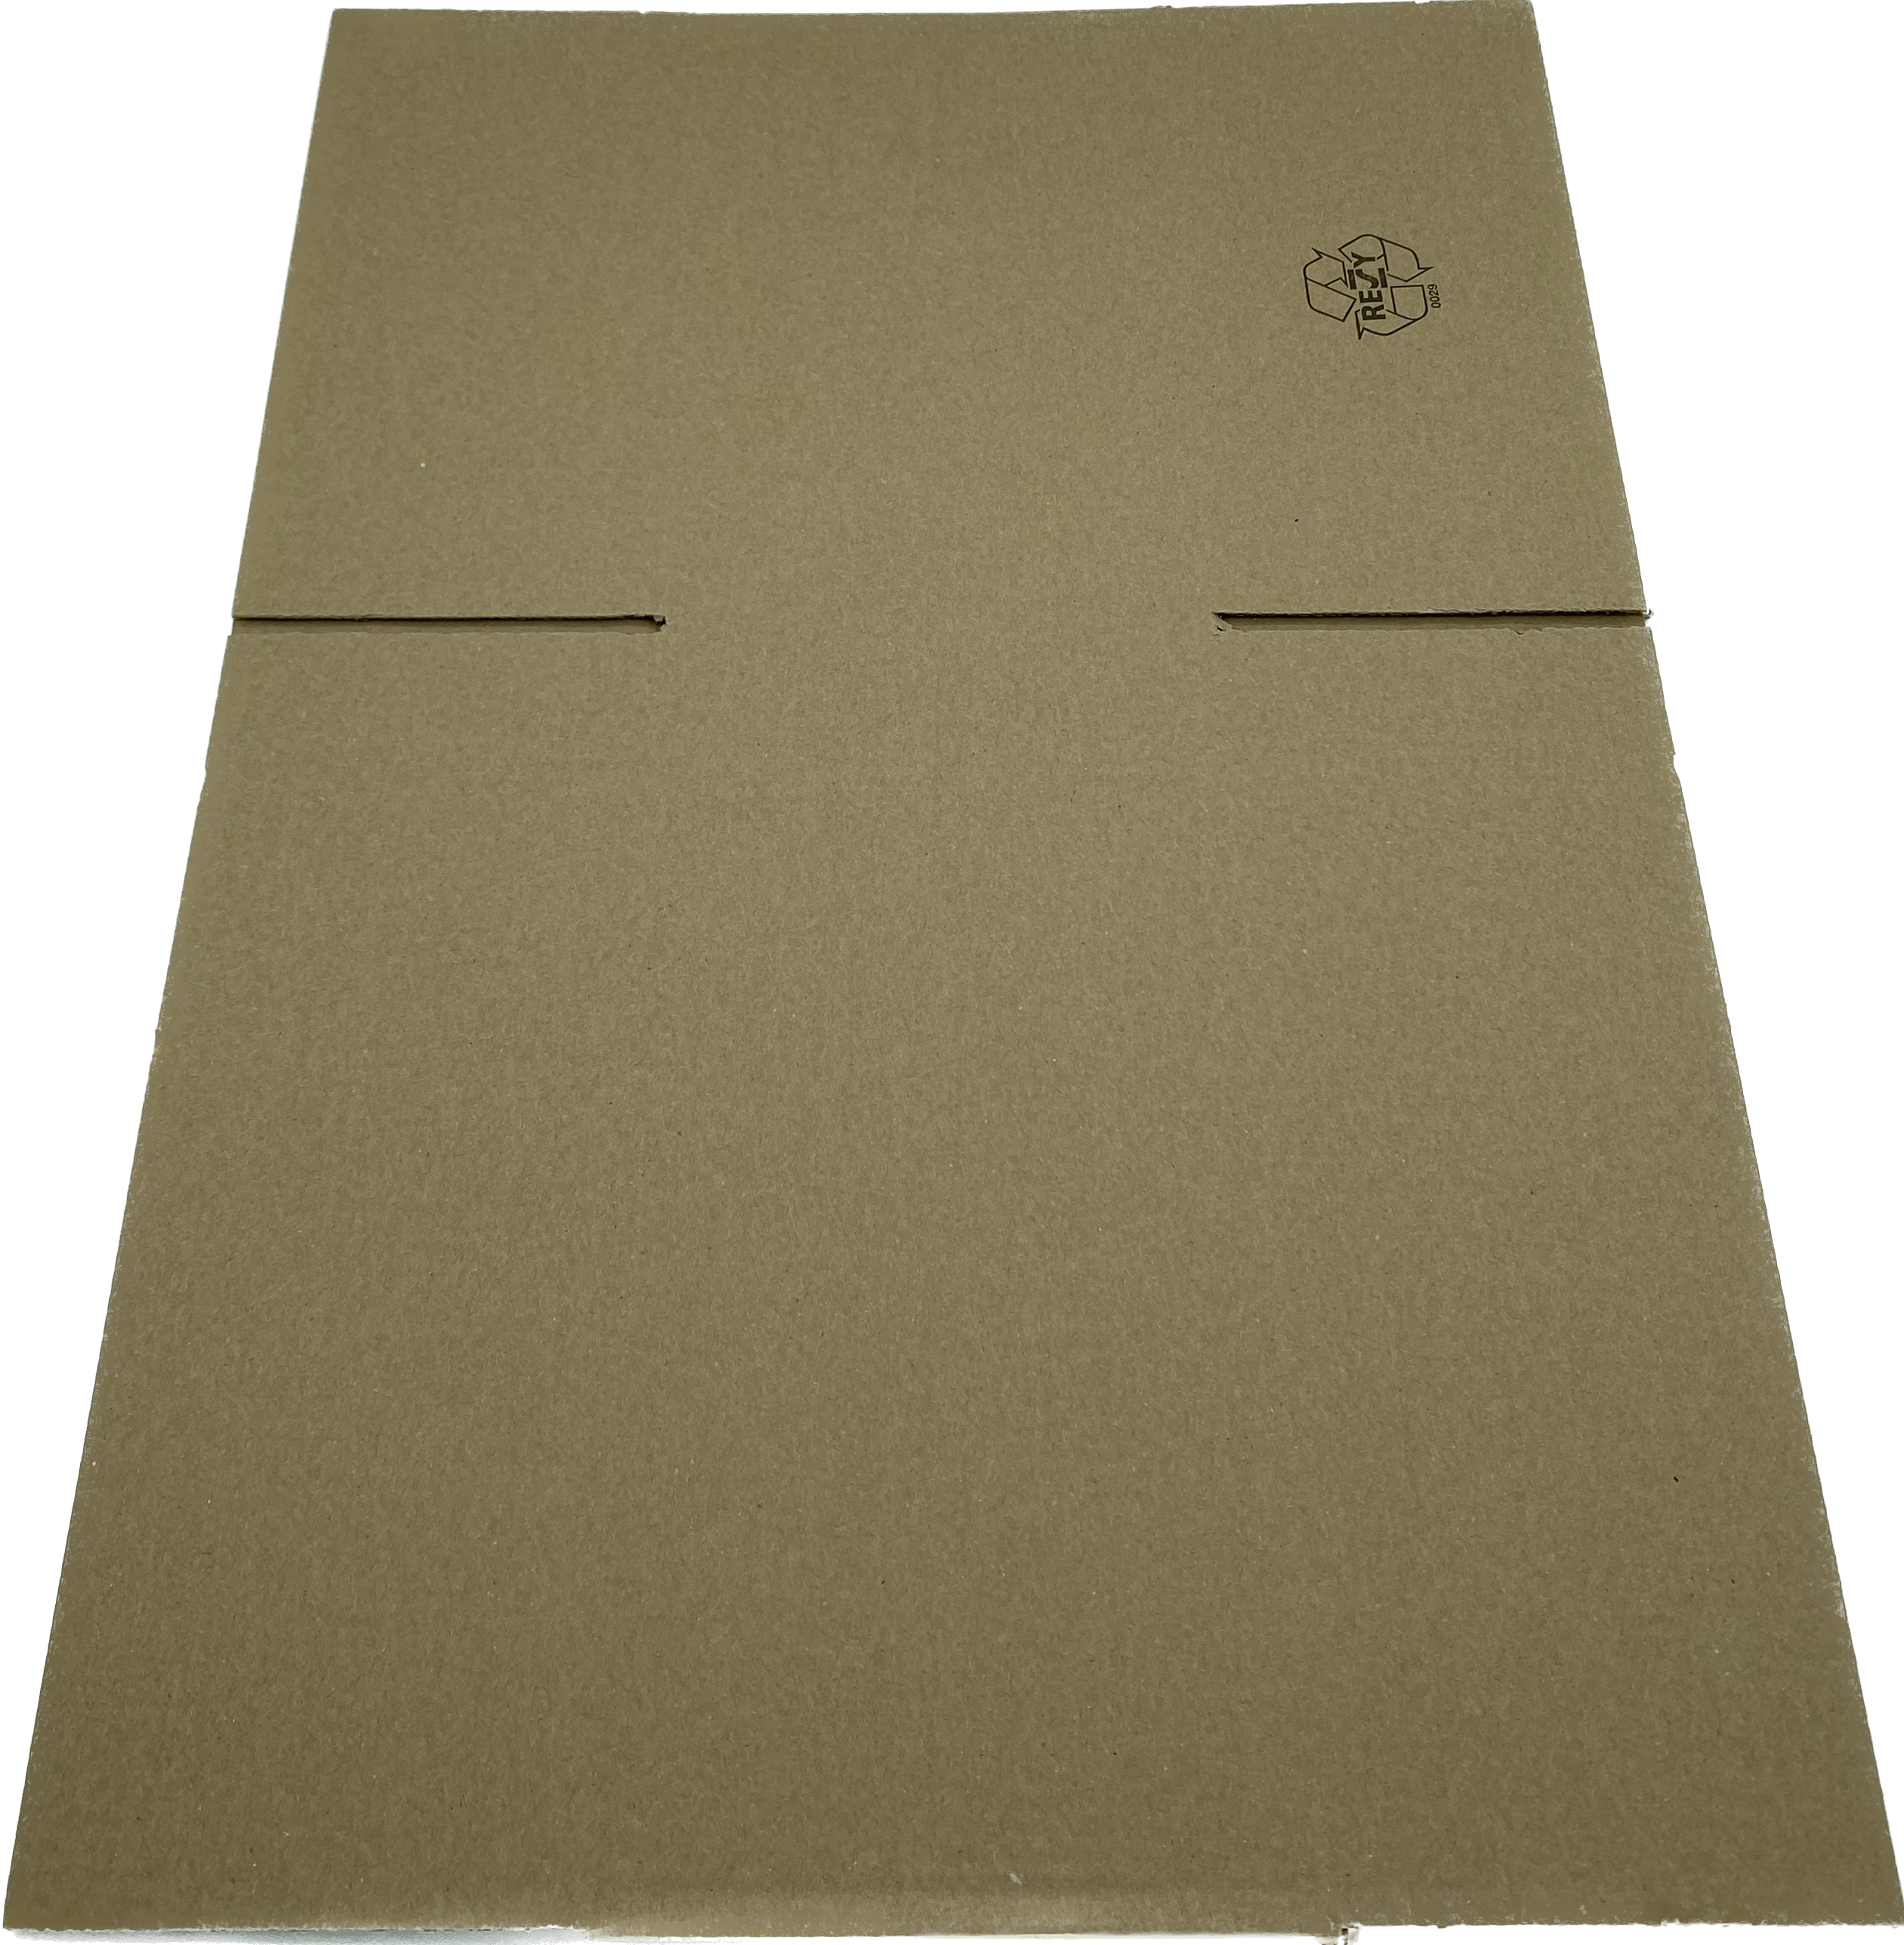 Wellpapp-Faltkarton, 394 x 294 x 188mm, 1.20B, 0201